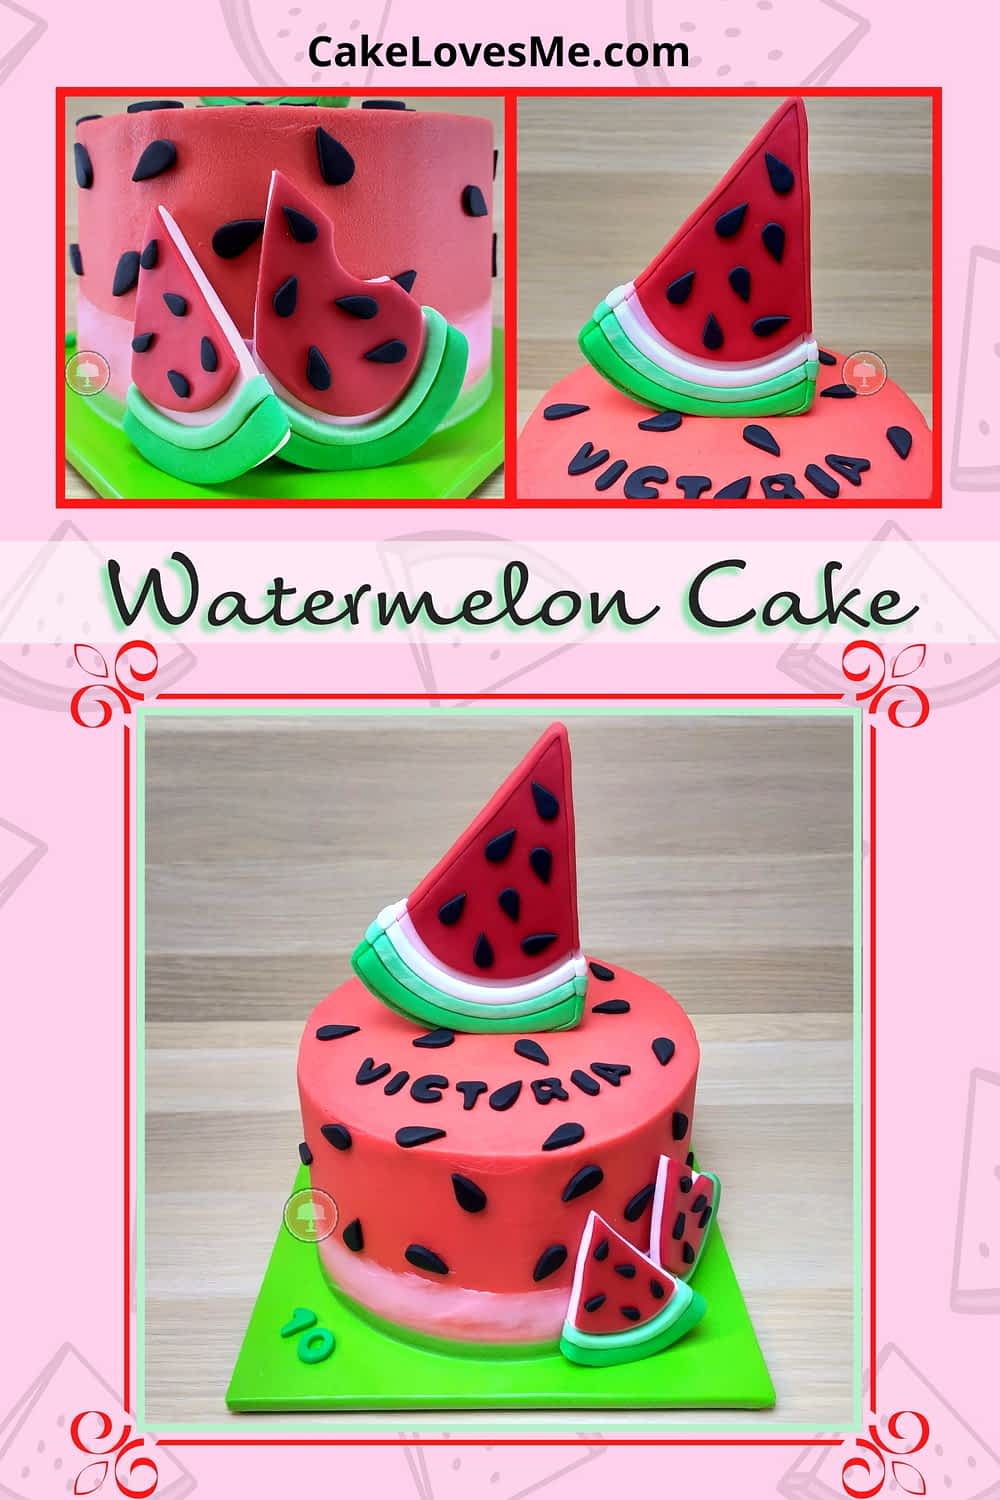 watermelon cake design